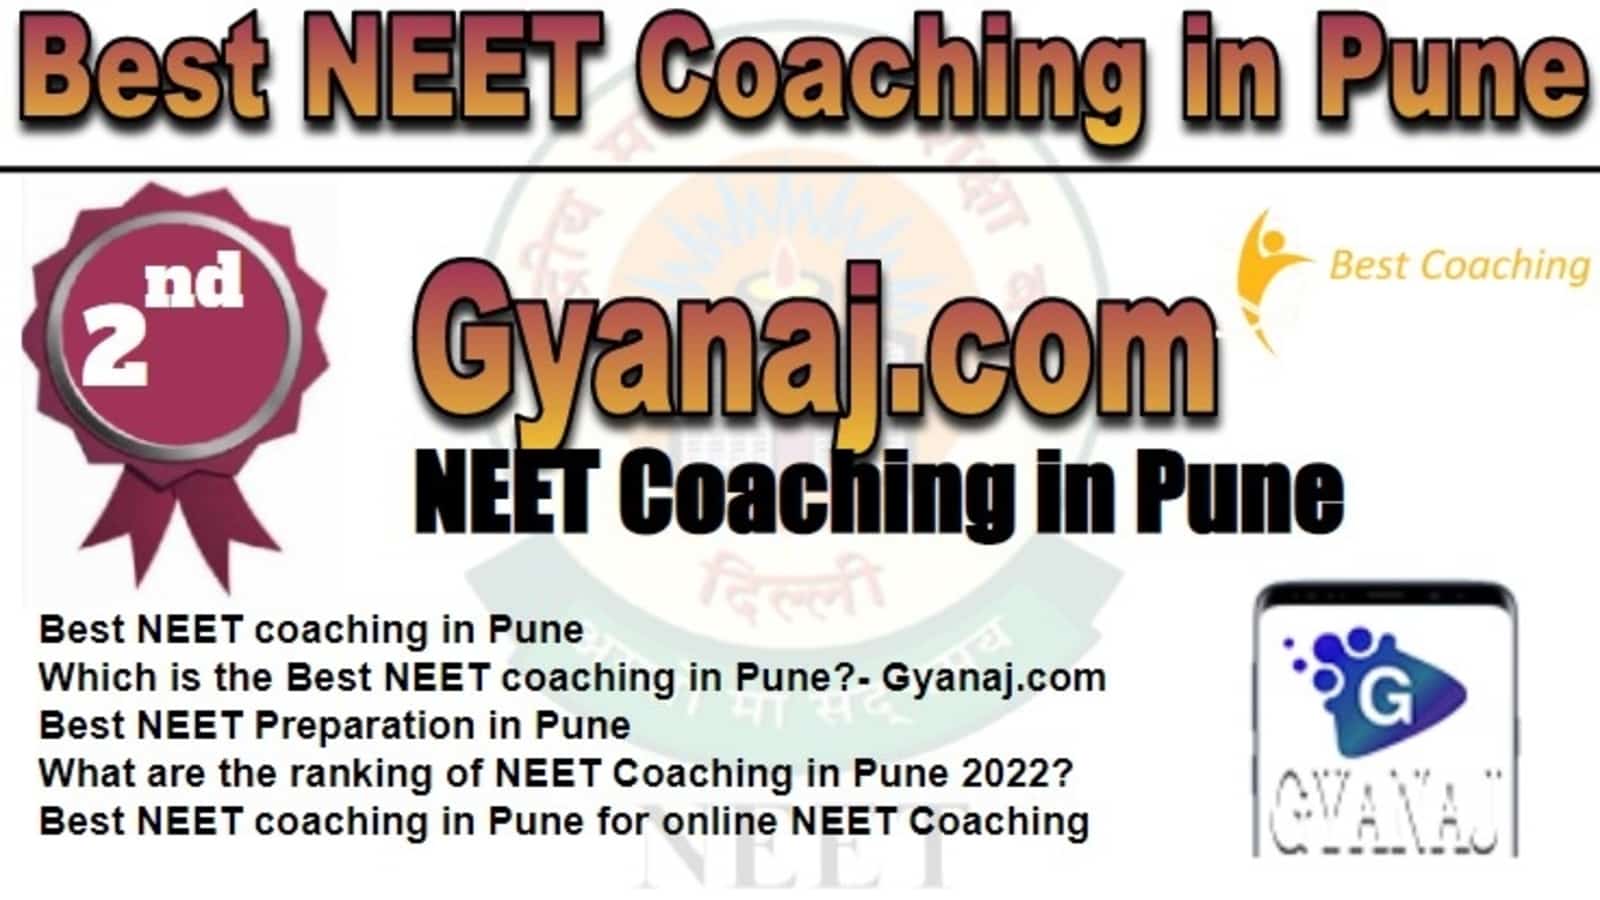 Rank 2 Best NEET Coaching in Pune